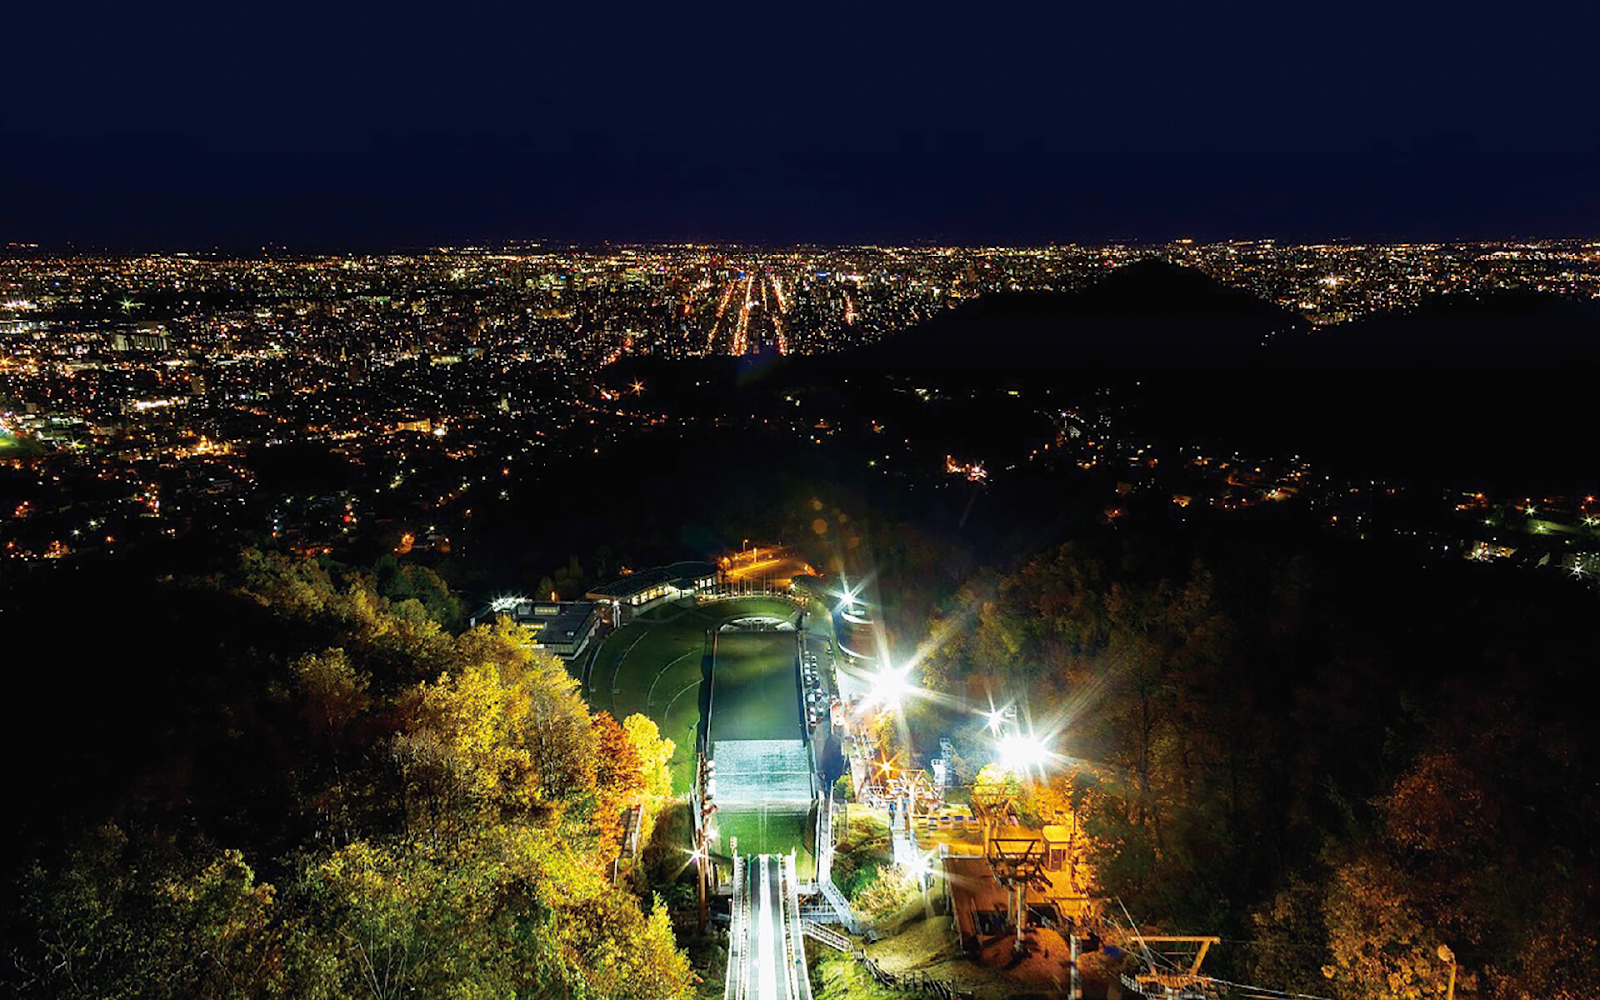 6.ジャンプ台越しに見る夜景がすごい！「大倉山展望台」